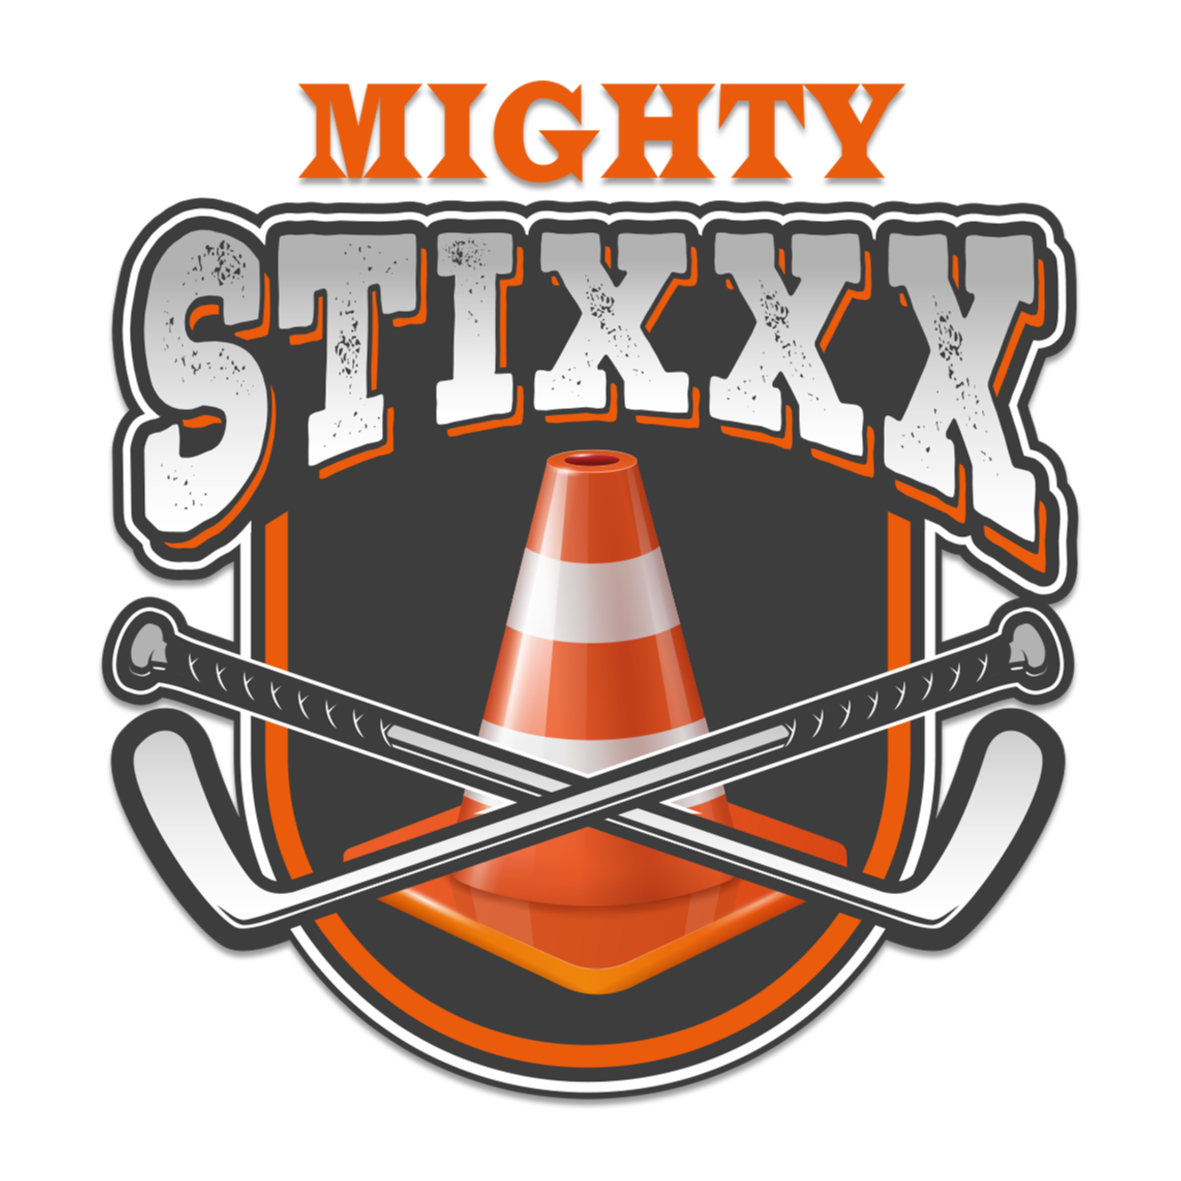 Mighty Stixxx